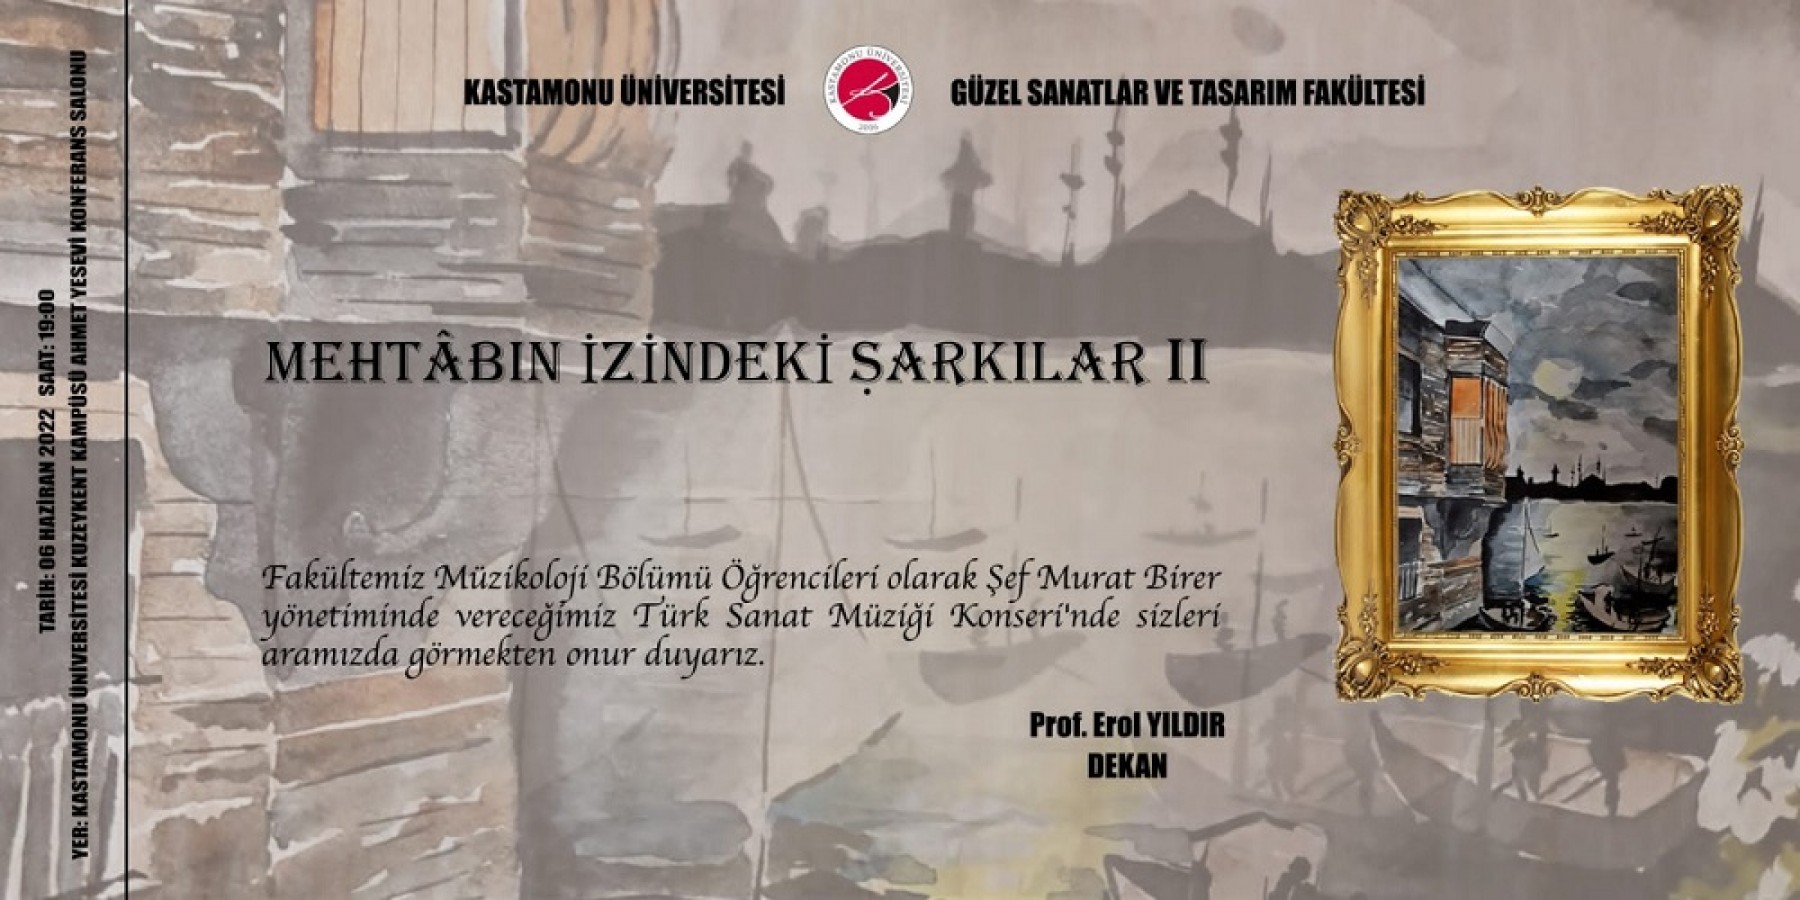 Güzel Sanatlar Fakültesi’nden Türk Sanat Müziği Konseri;